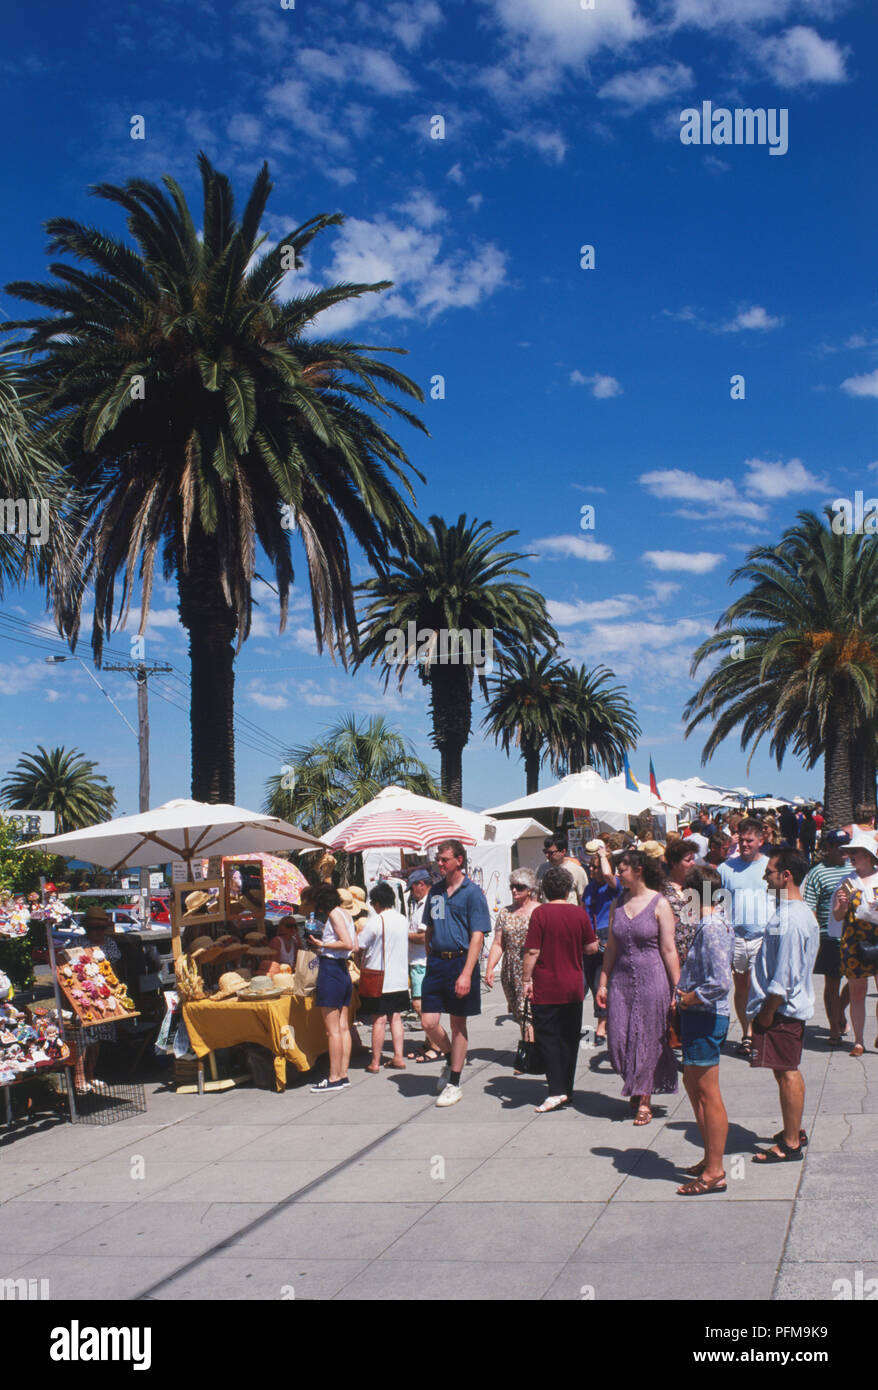 Australien, Melbourne, St Kilda Esplanade, Menschenmassen, Handwerkermarkt am von Palmen gesäumten Boulevard. Stockfoto